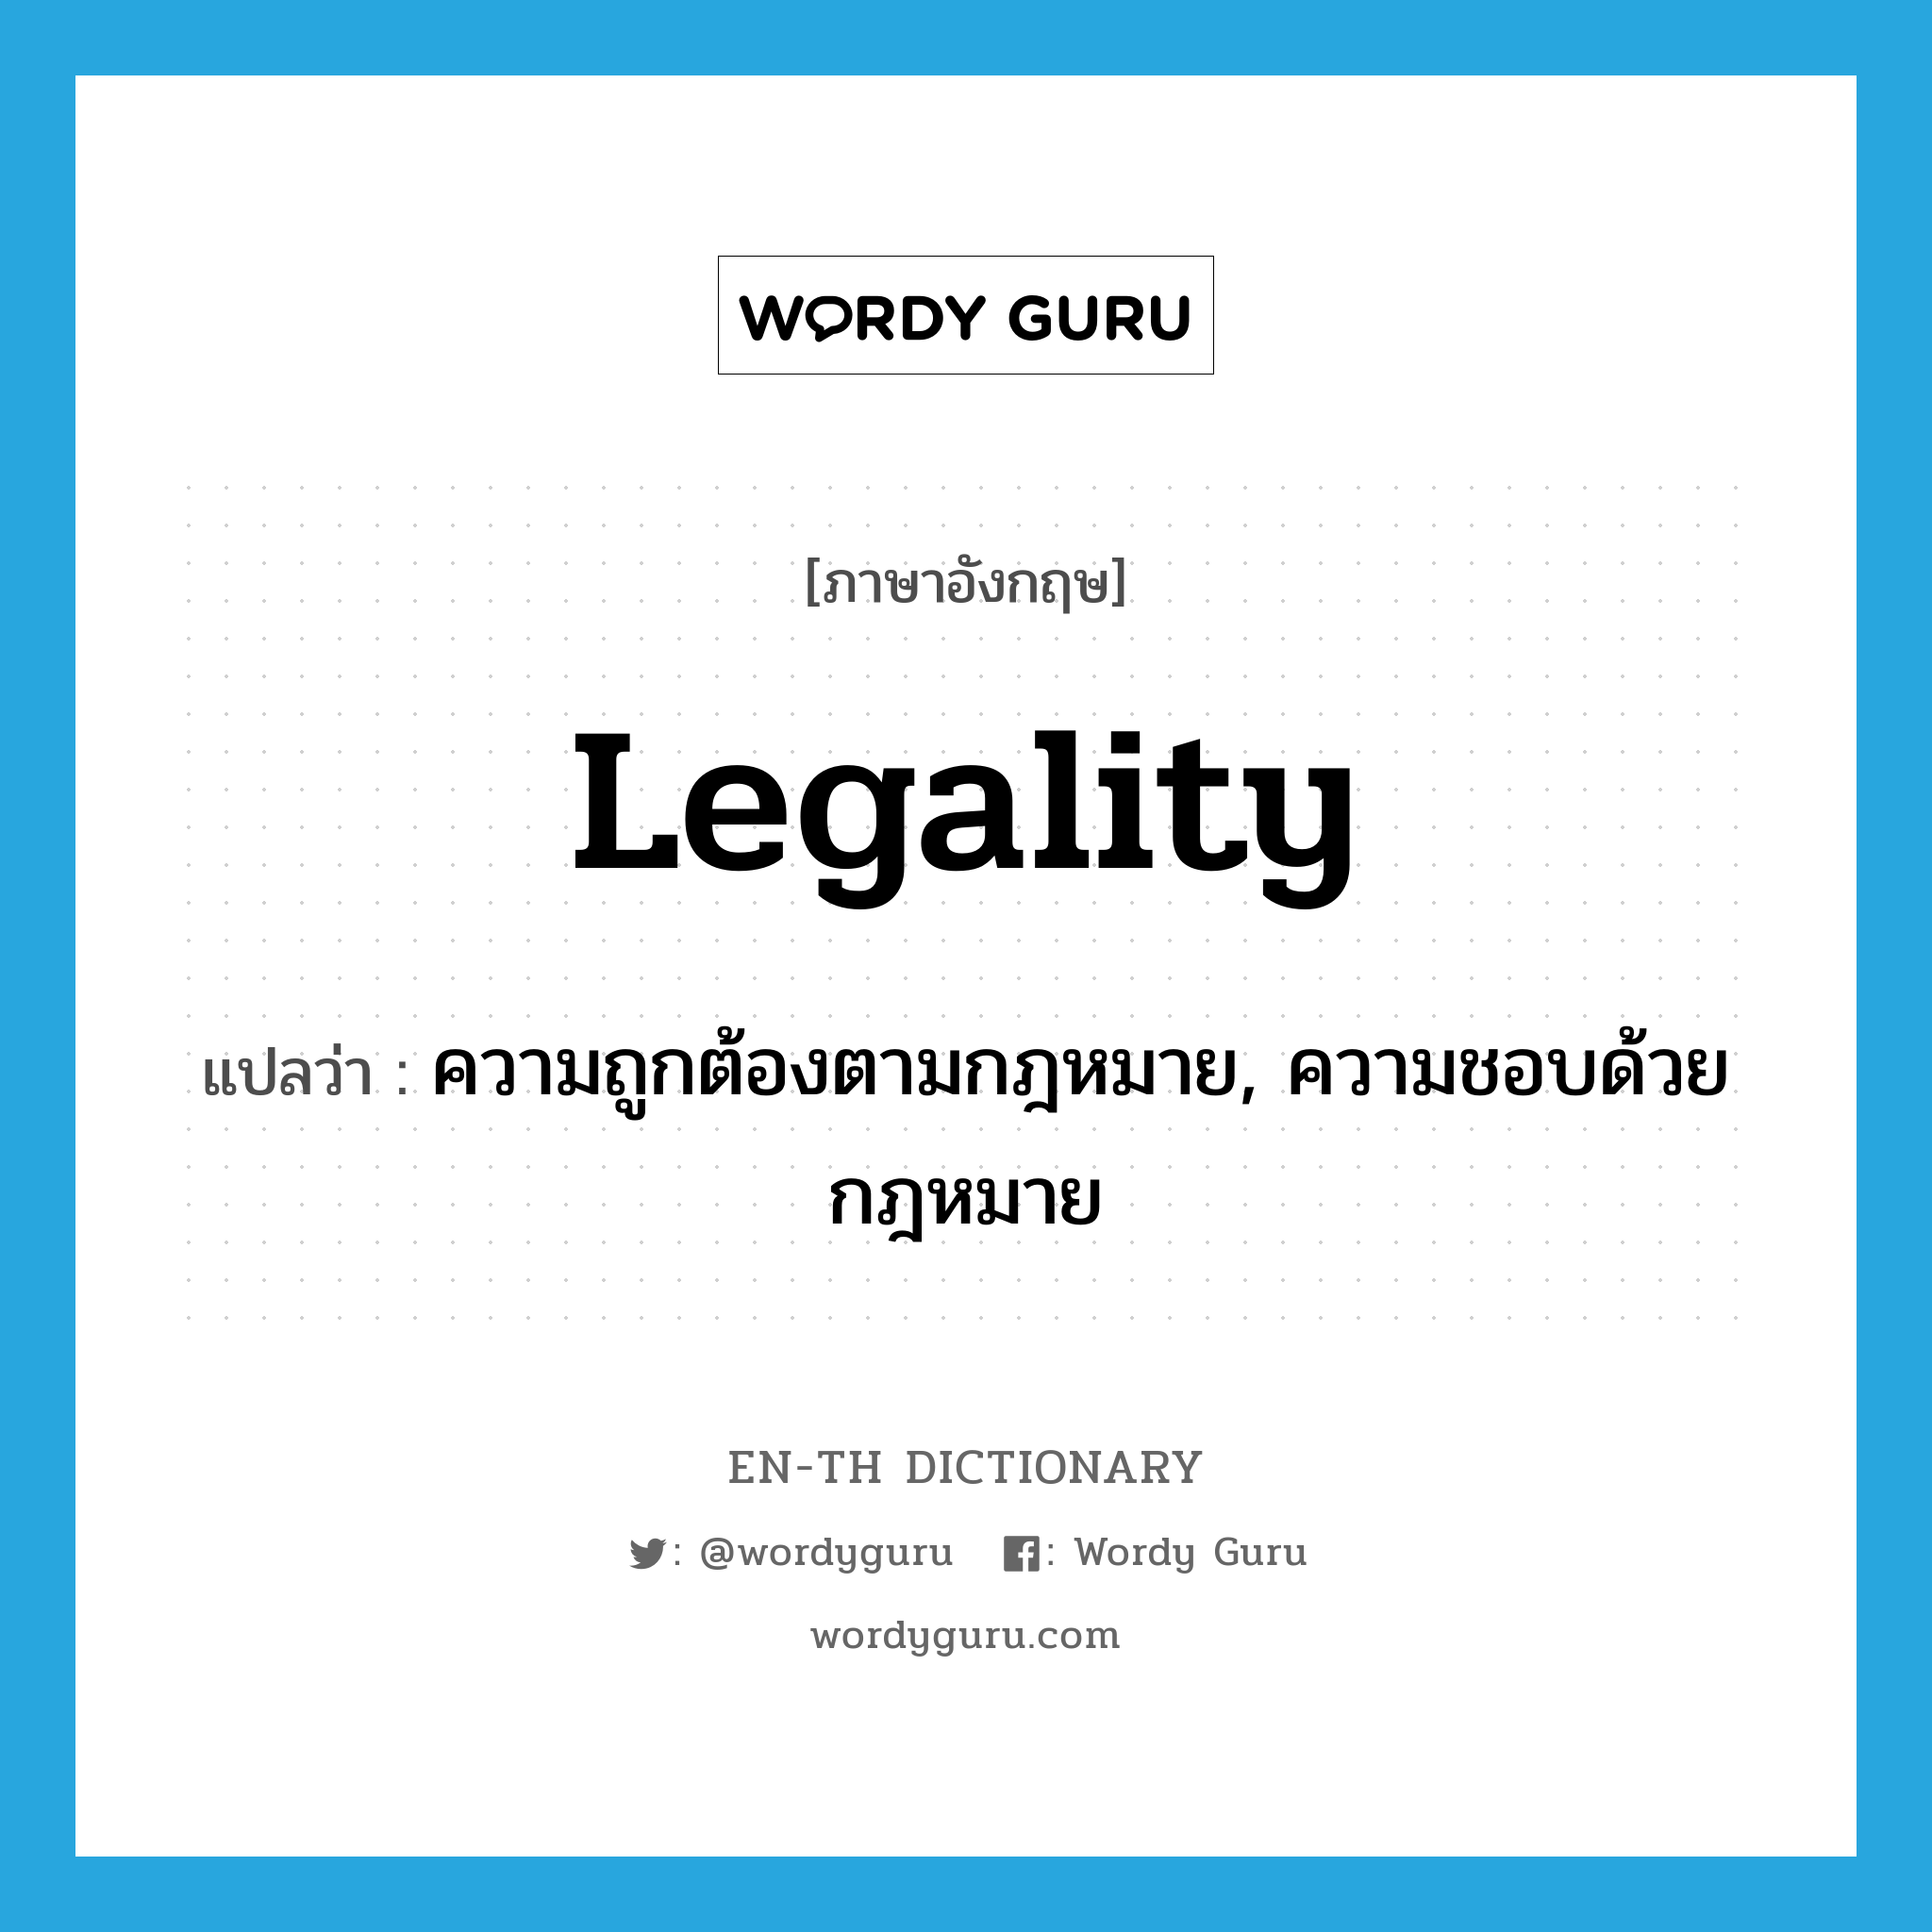 ความถูกต้องตามกฎหมาย, ความชอบด้วยกฎหมาย ภาษาอังกฤษ?, คำศัพท์ภาษาอังกฤษ ความถูกต้องตามกฎหมาย, ความชอบด้วยกฎหมาย แปลว่า legality ประเภท N หมวด N